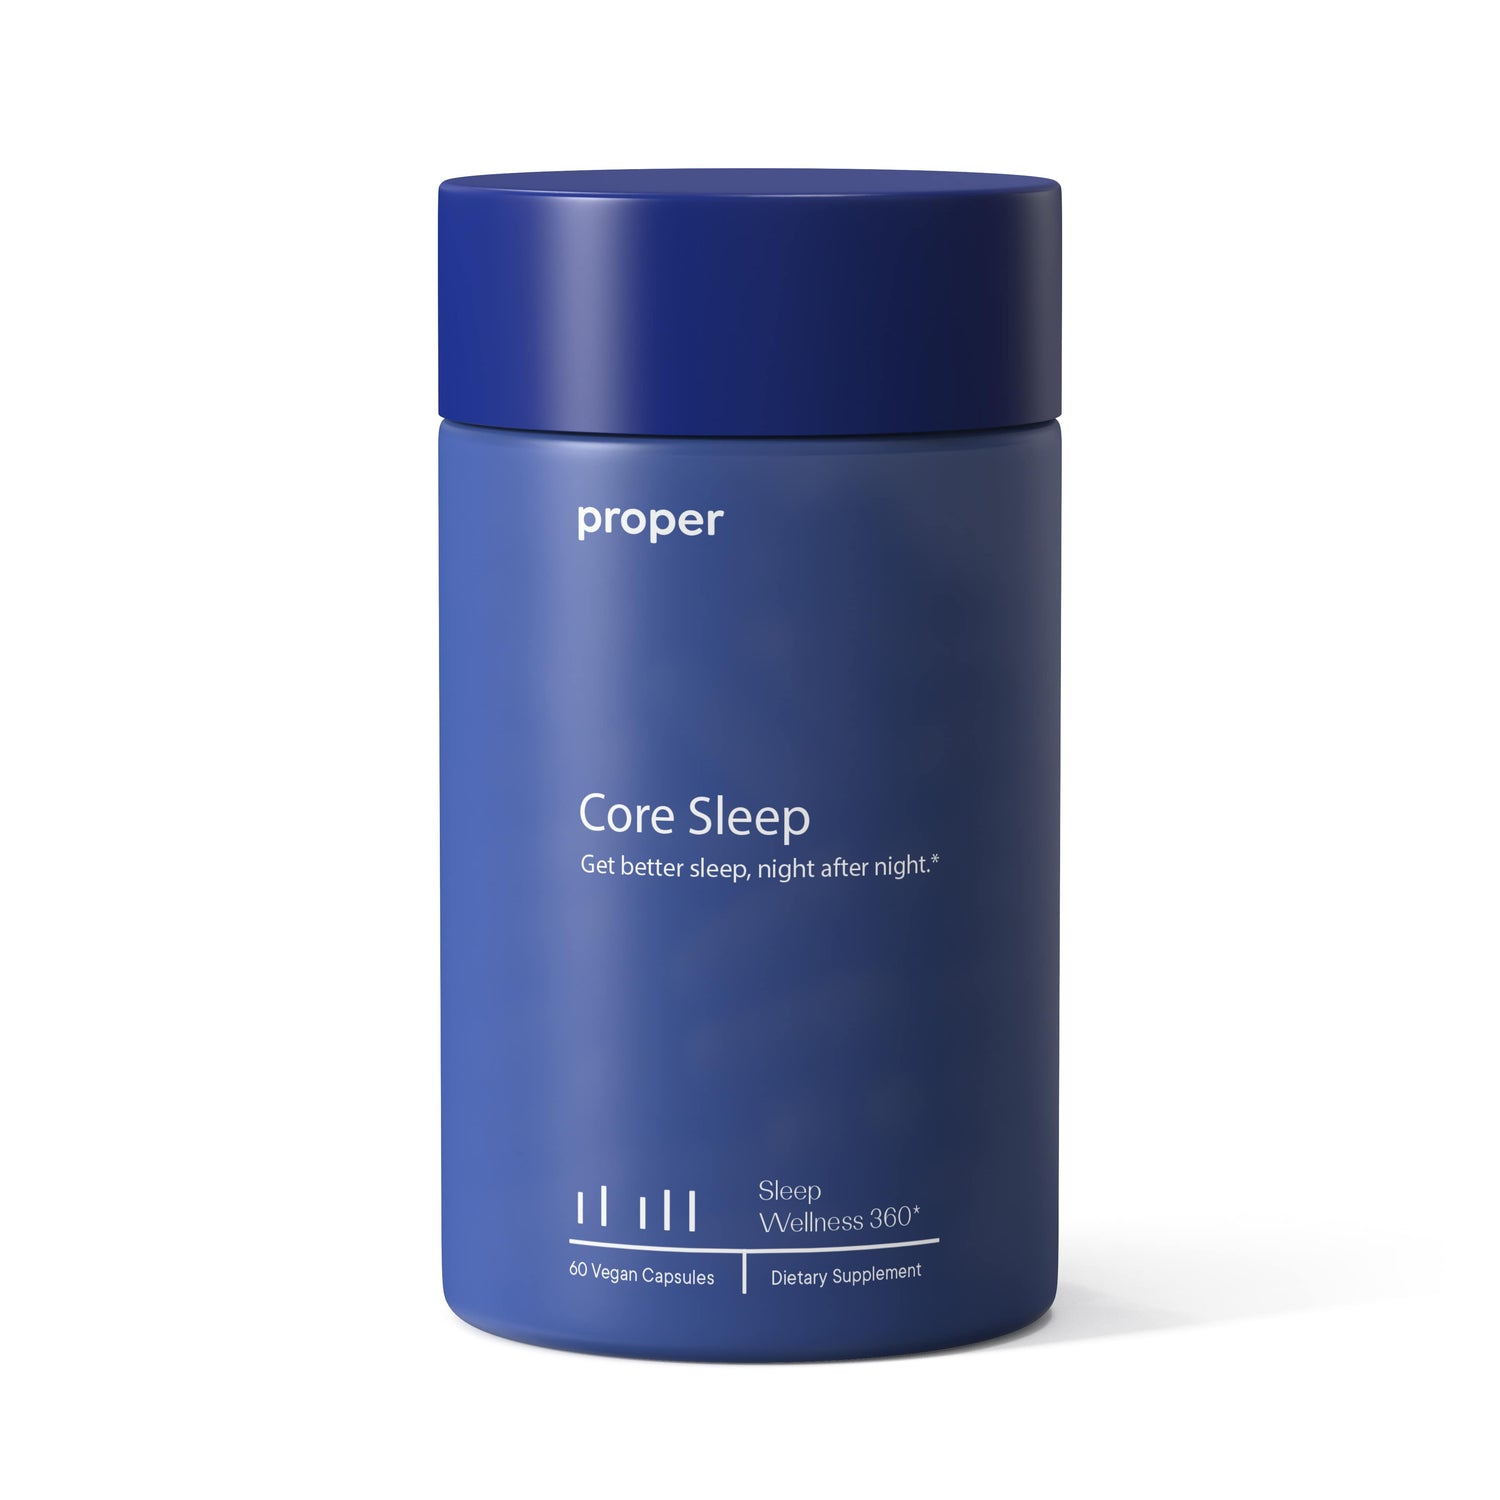 Core Sleep